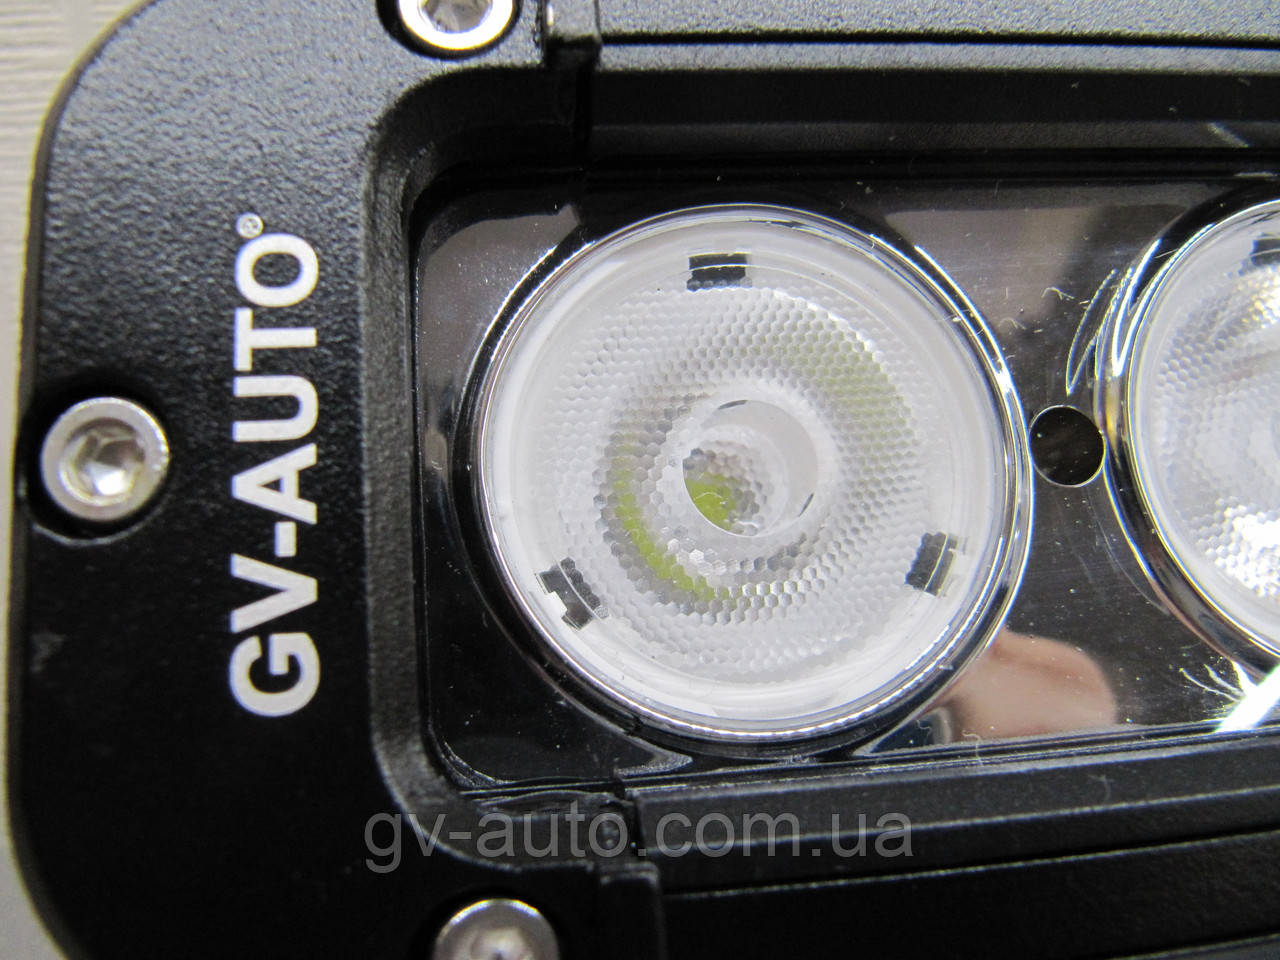 Додаткова фара LED GV-S1040F широкий промінь світла 40 Вт. - 20 див.